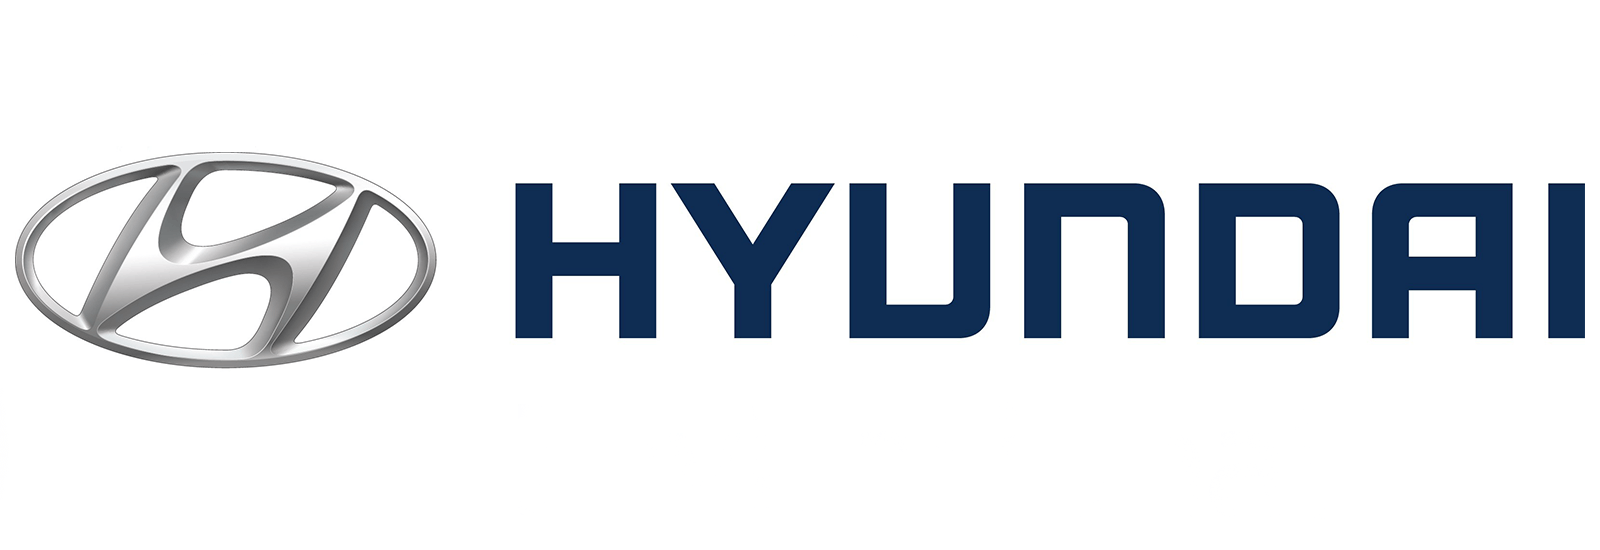 Marcas de coches hyundai-logo